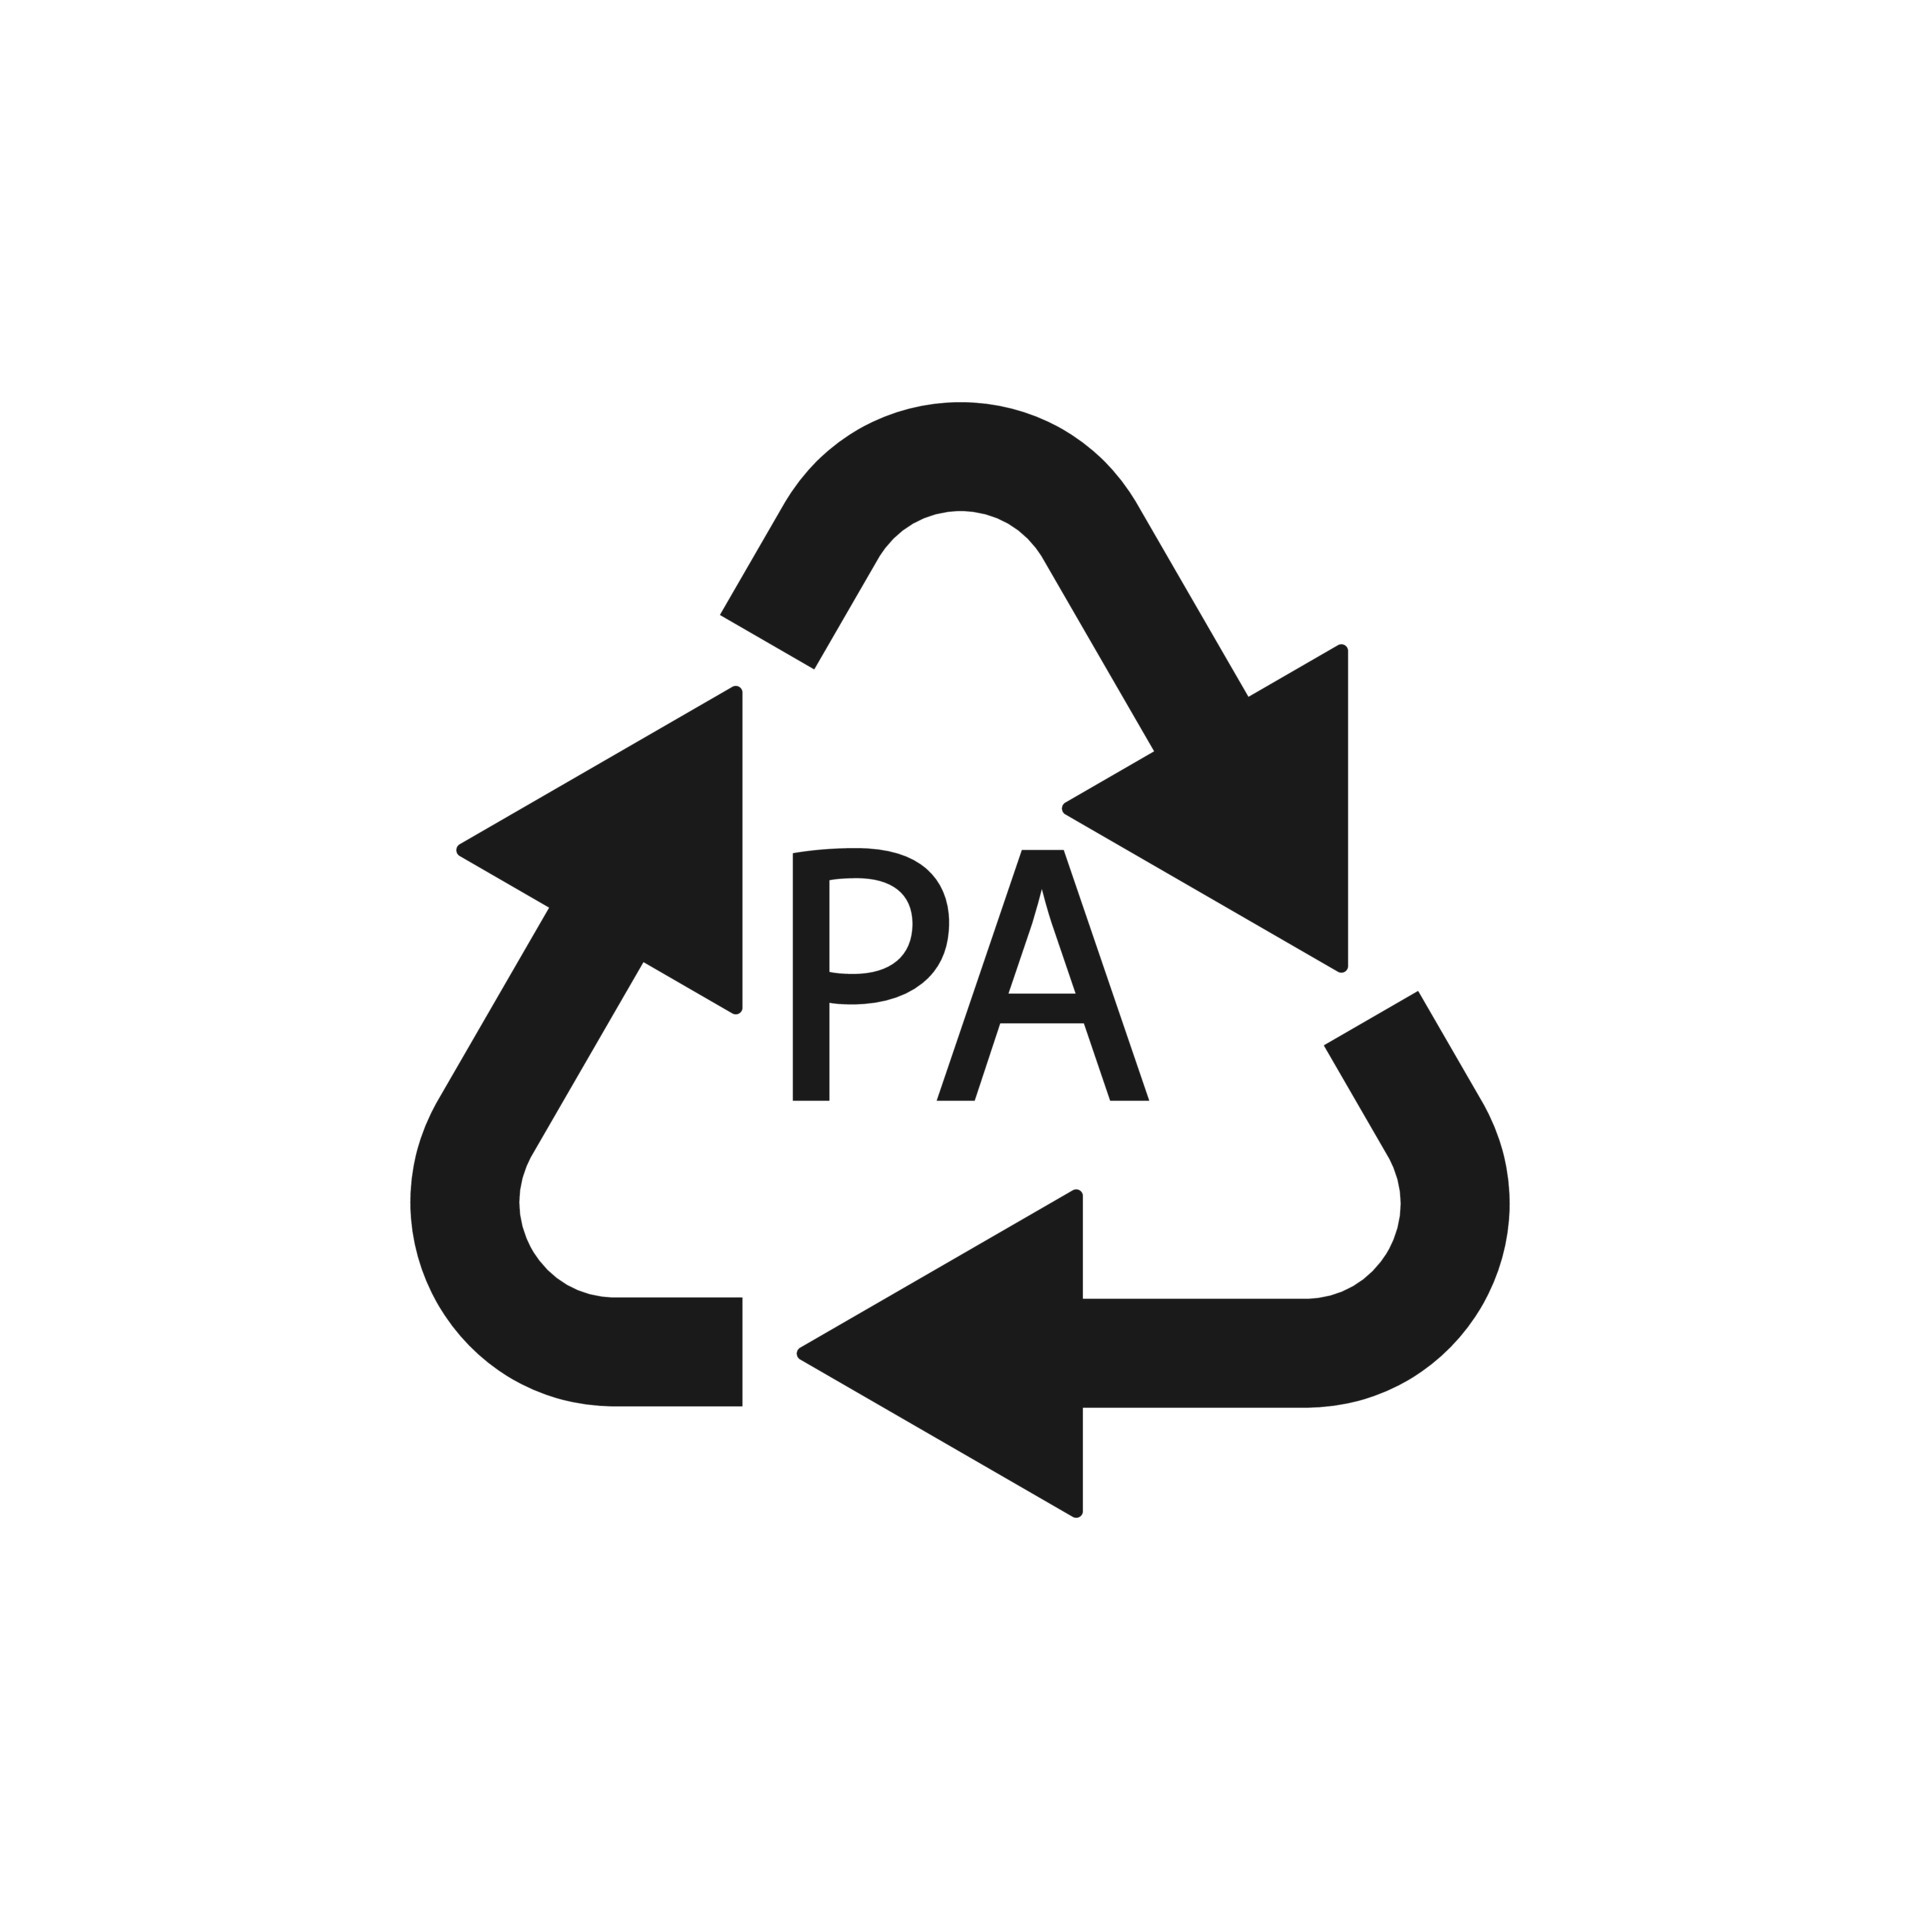 símbolo de reciclagem de plástico pa poliamida, ilustração vetorial 4922228  Vetor no Vecteezy